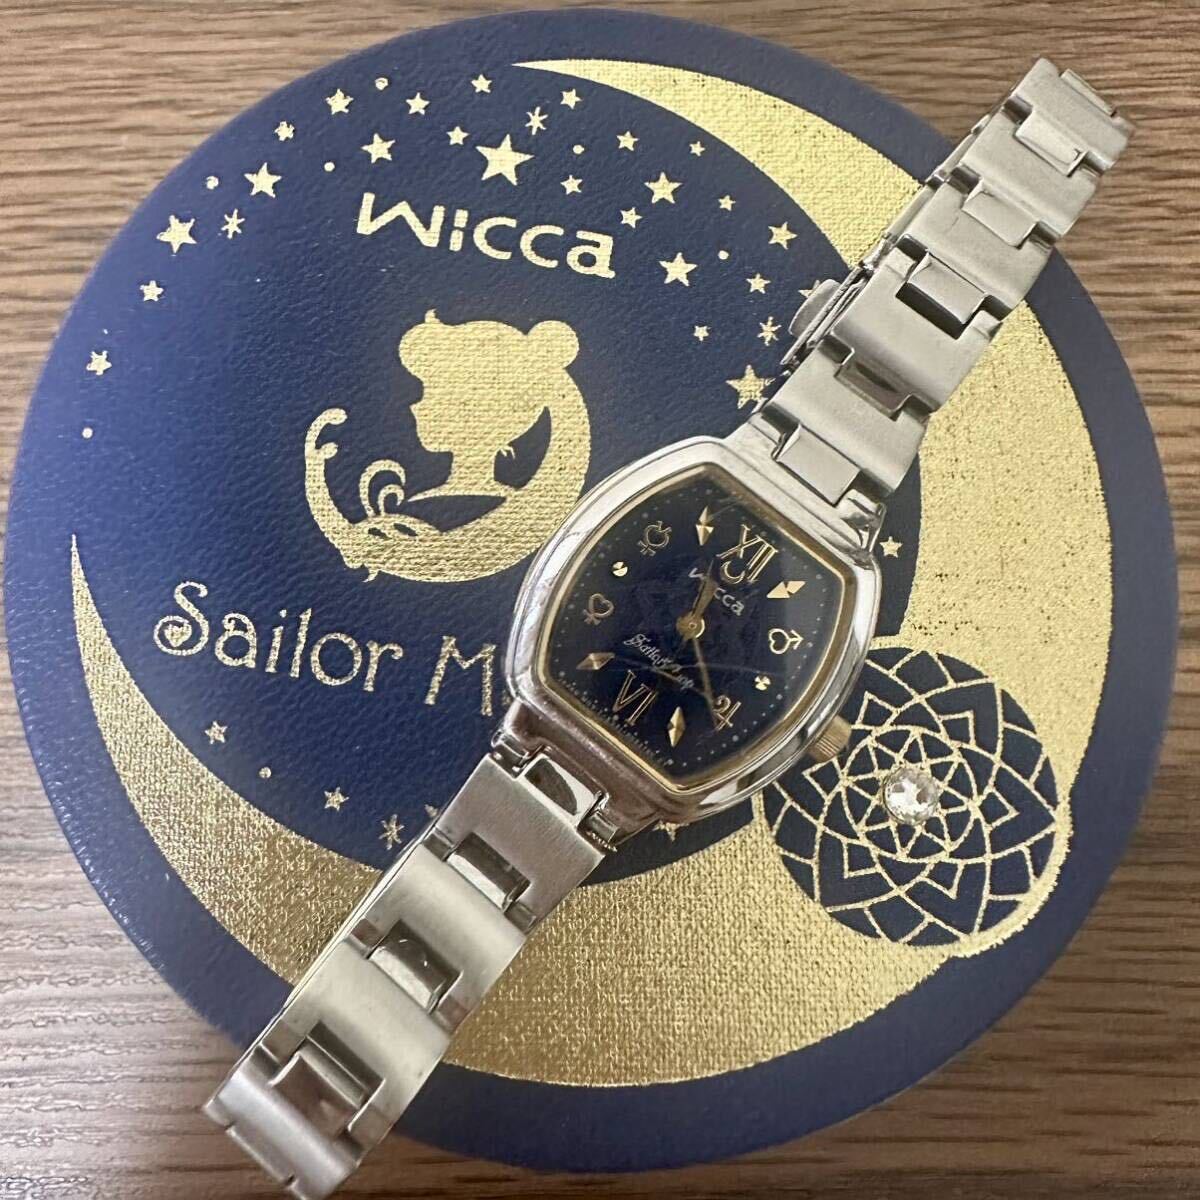 [1 иен ~]CITIZEN wicca Citizen Wicca наручные часы Sailor Moon темно-синий tonneau ограничение солнечный работоспособность не проверялась 